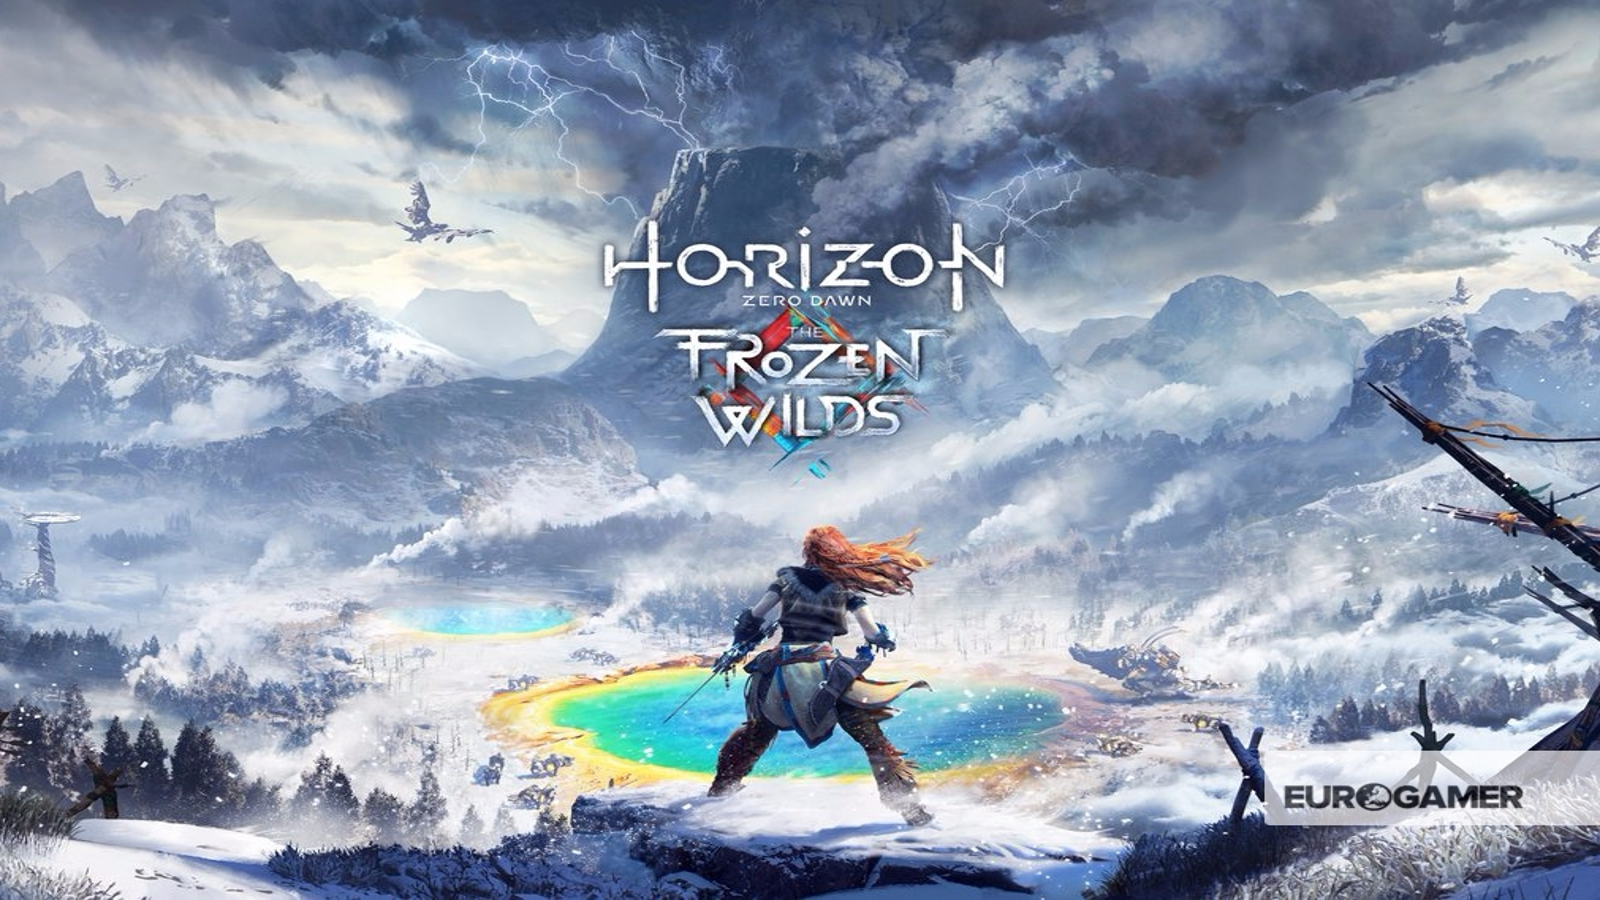 Out This Week: Xbox One X, Horizon: Zero Dawn – The Frozen Wilds